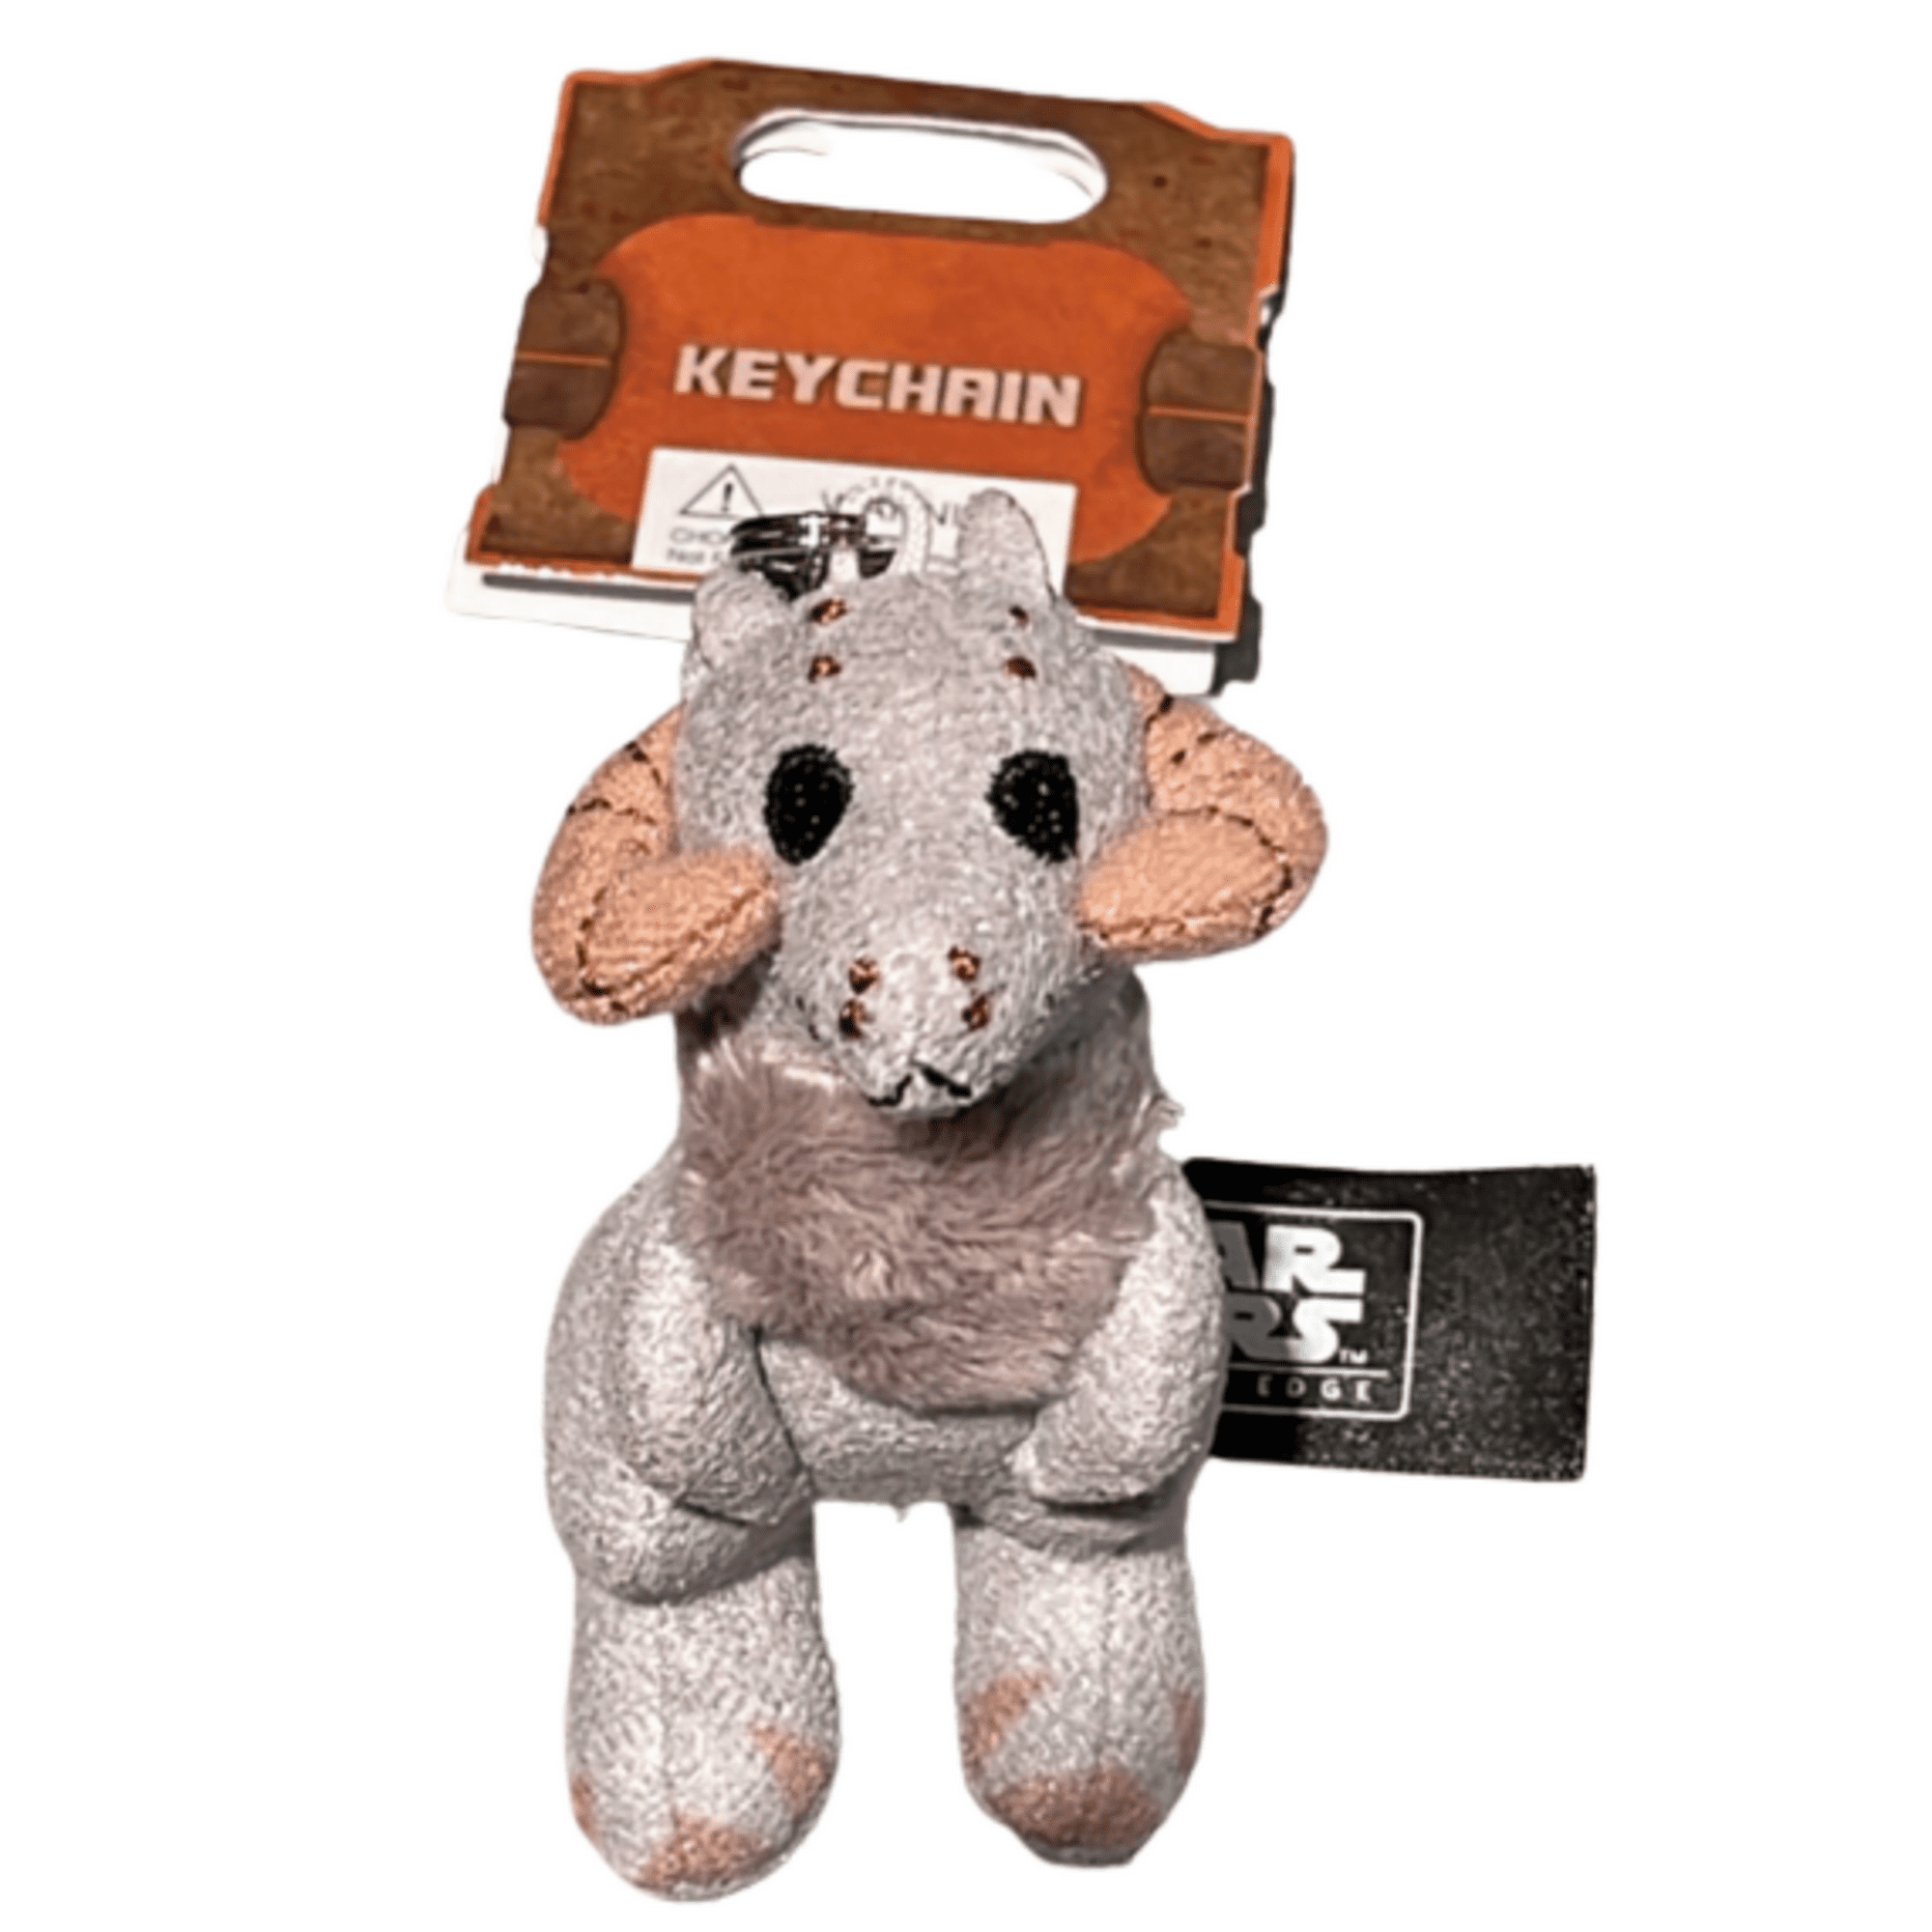 SWGE Tauntaun Plush Toy Keychain 1